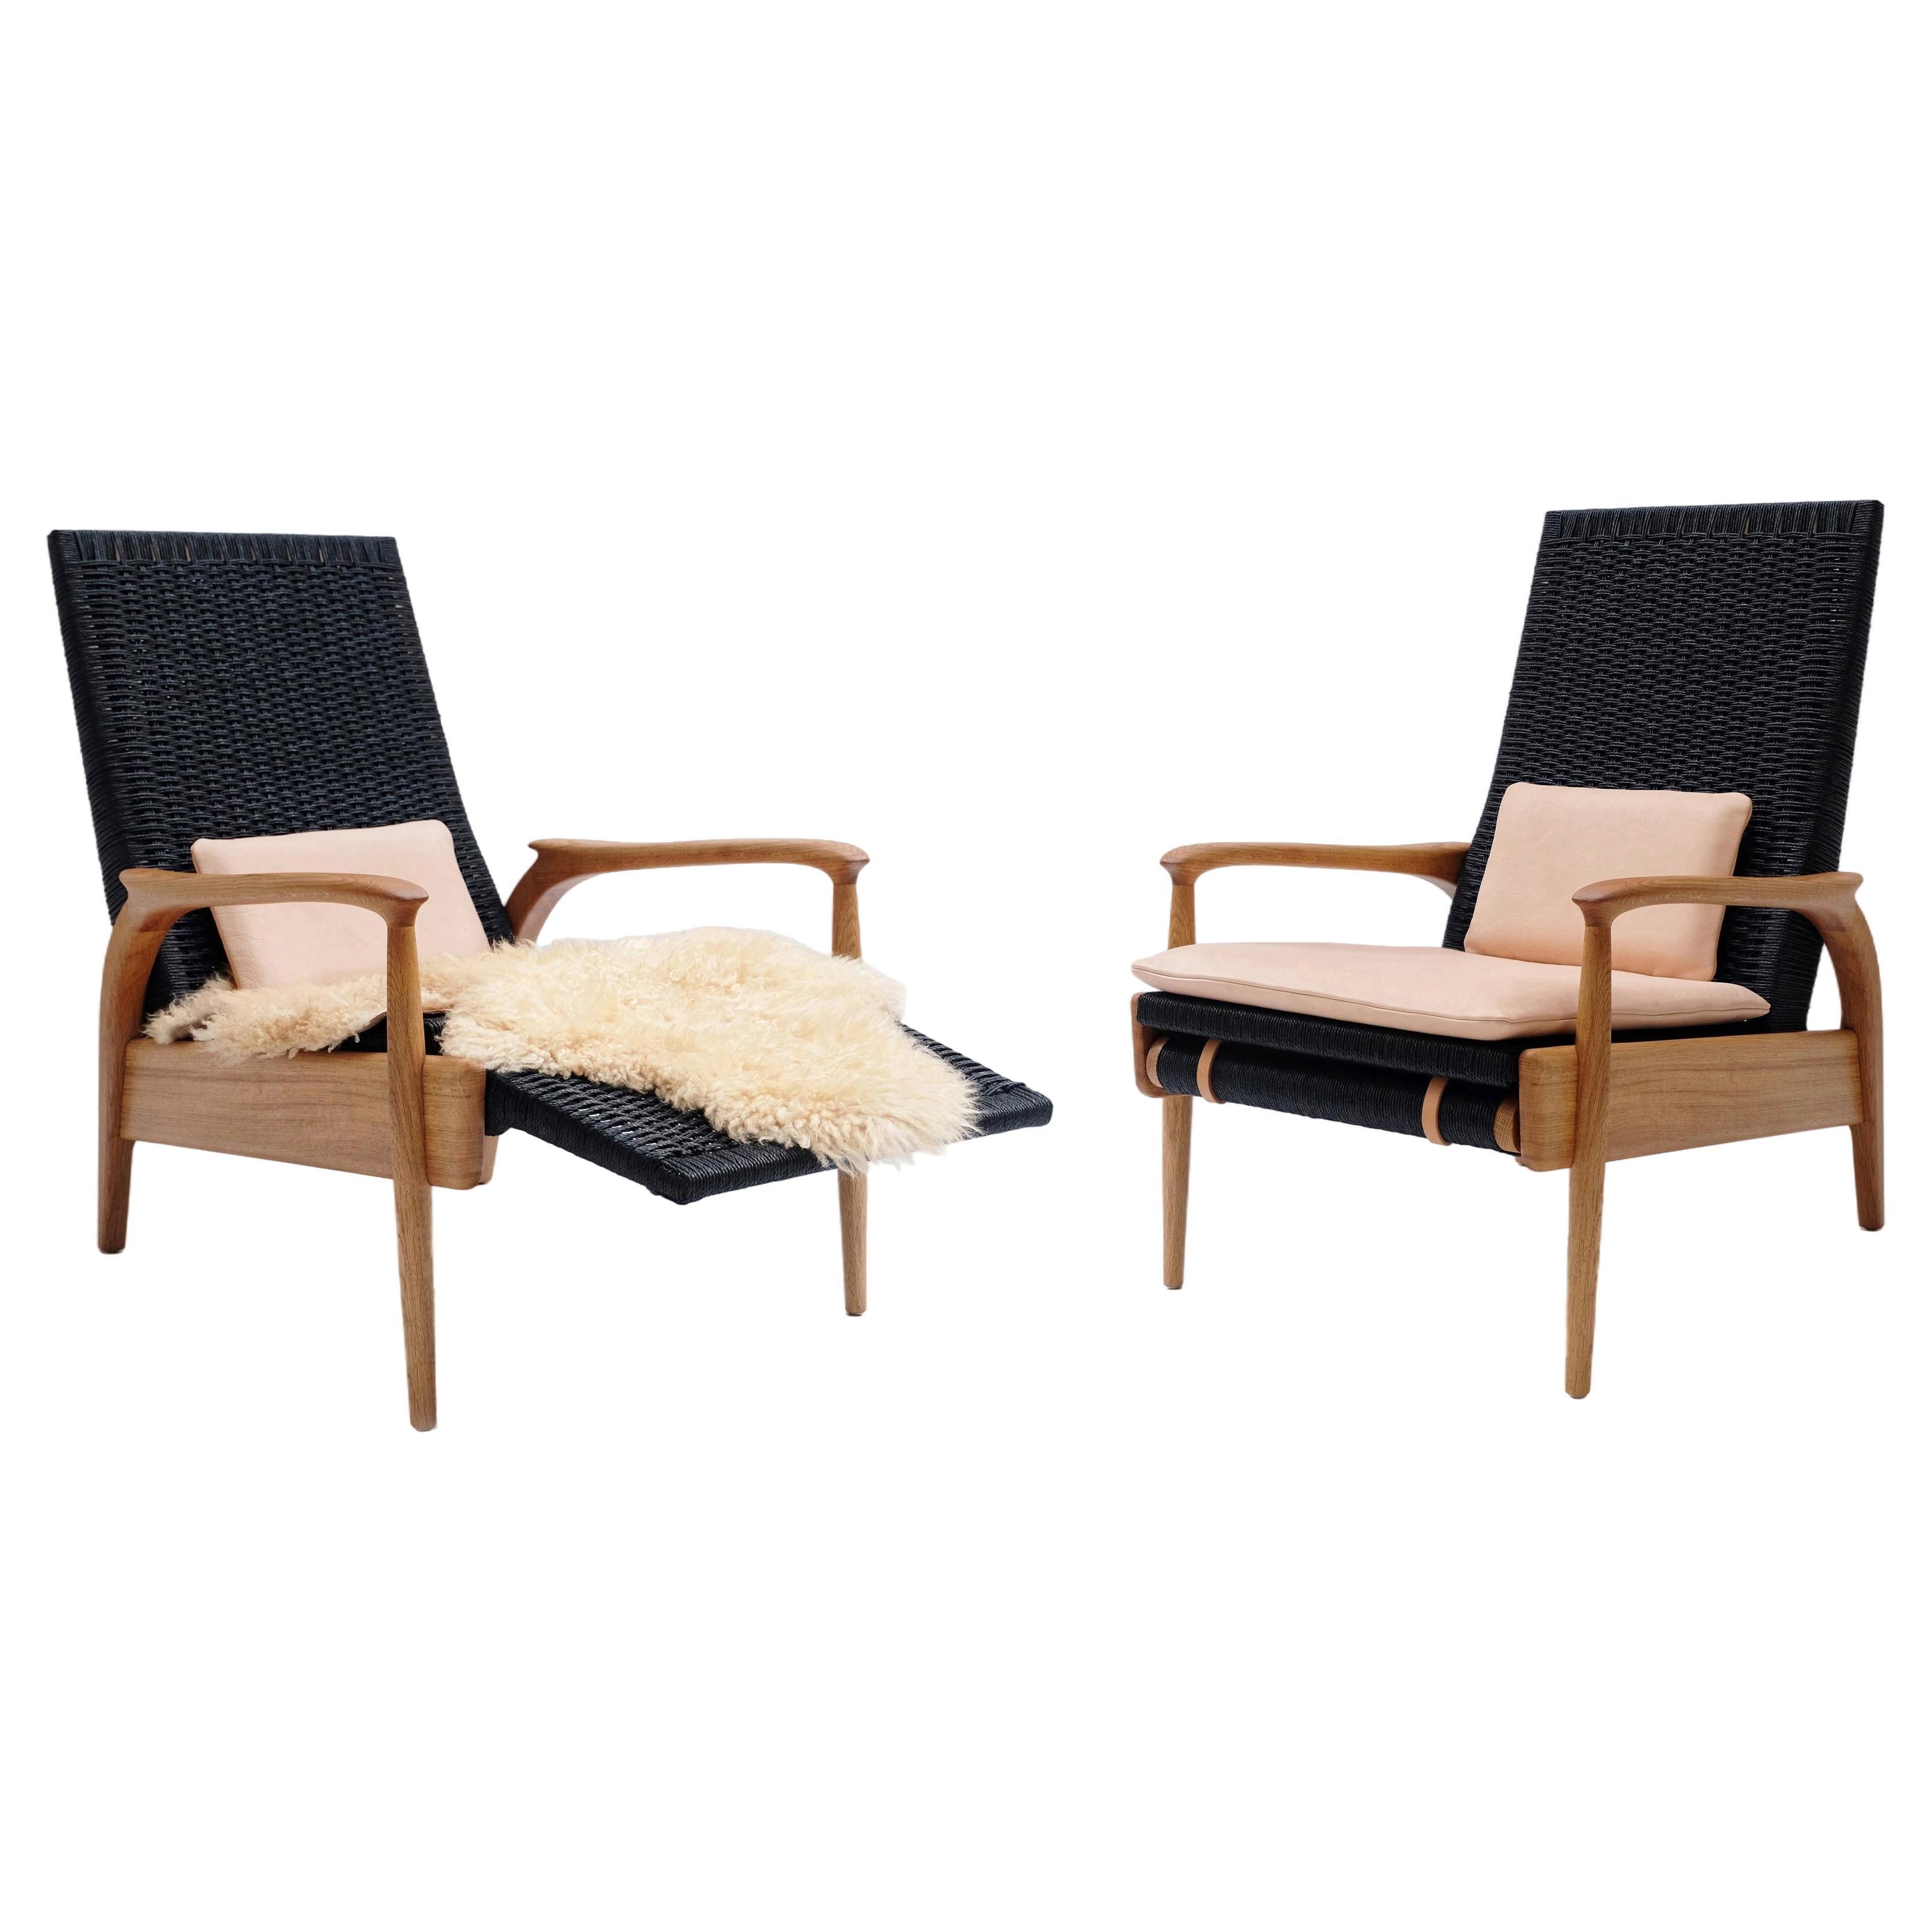 Paire de fauteuils inclinables, Oak Oak massif, corde danoise noire, coussins en cuir en vente